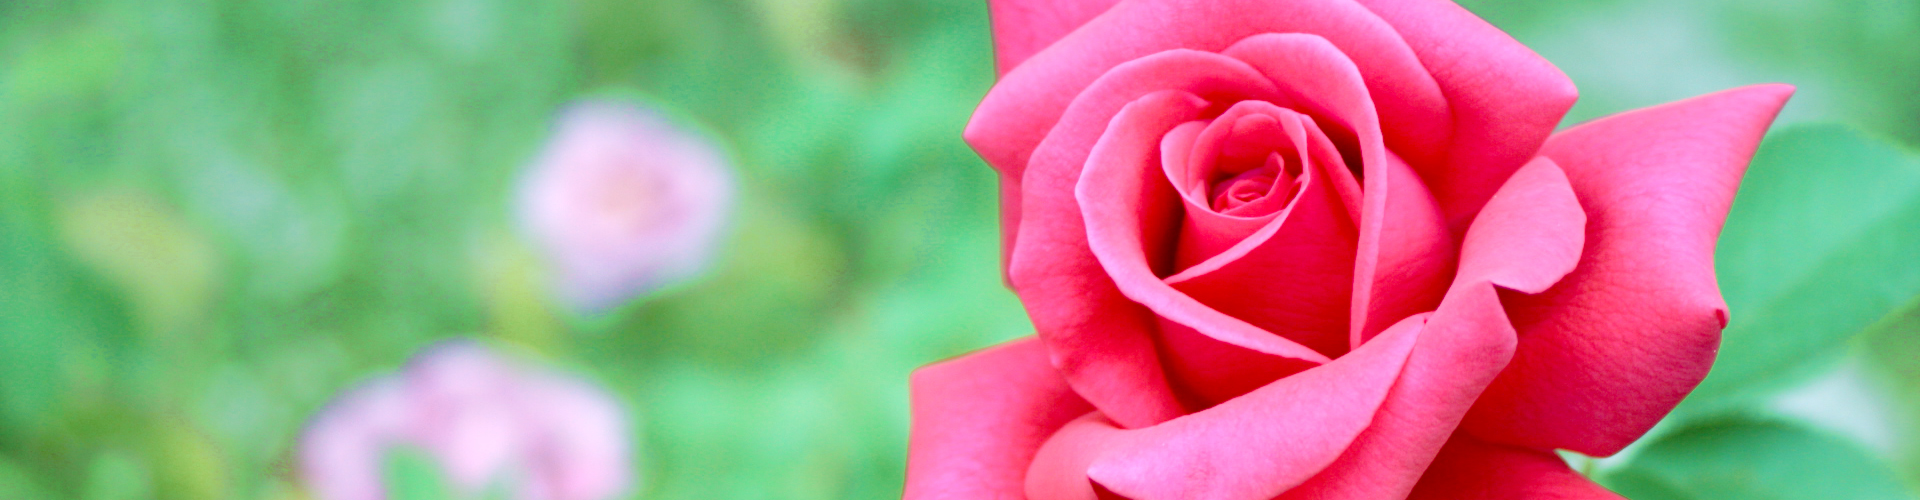 赤いバラ お花の写真素材 商用可フリー